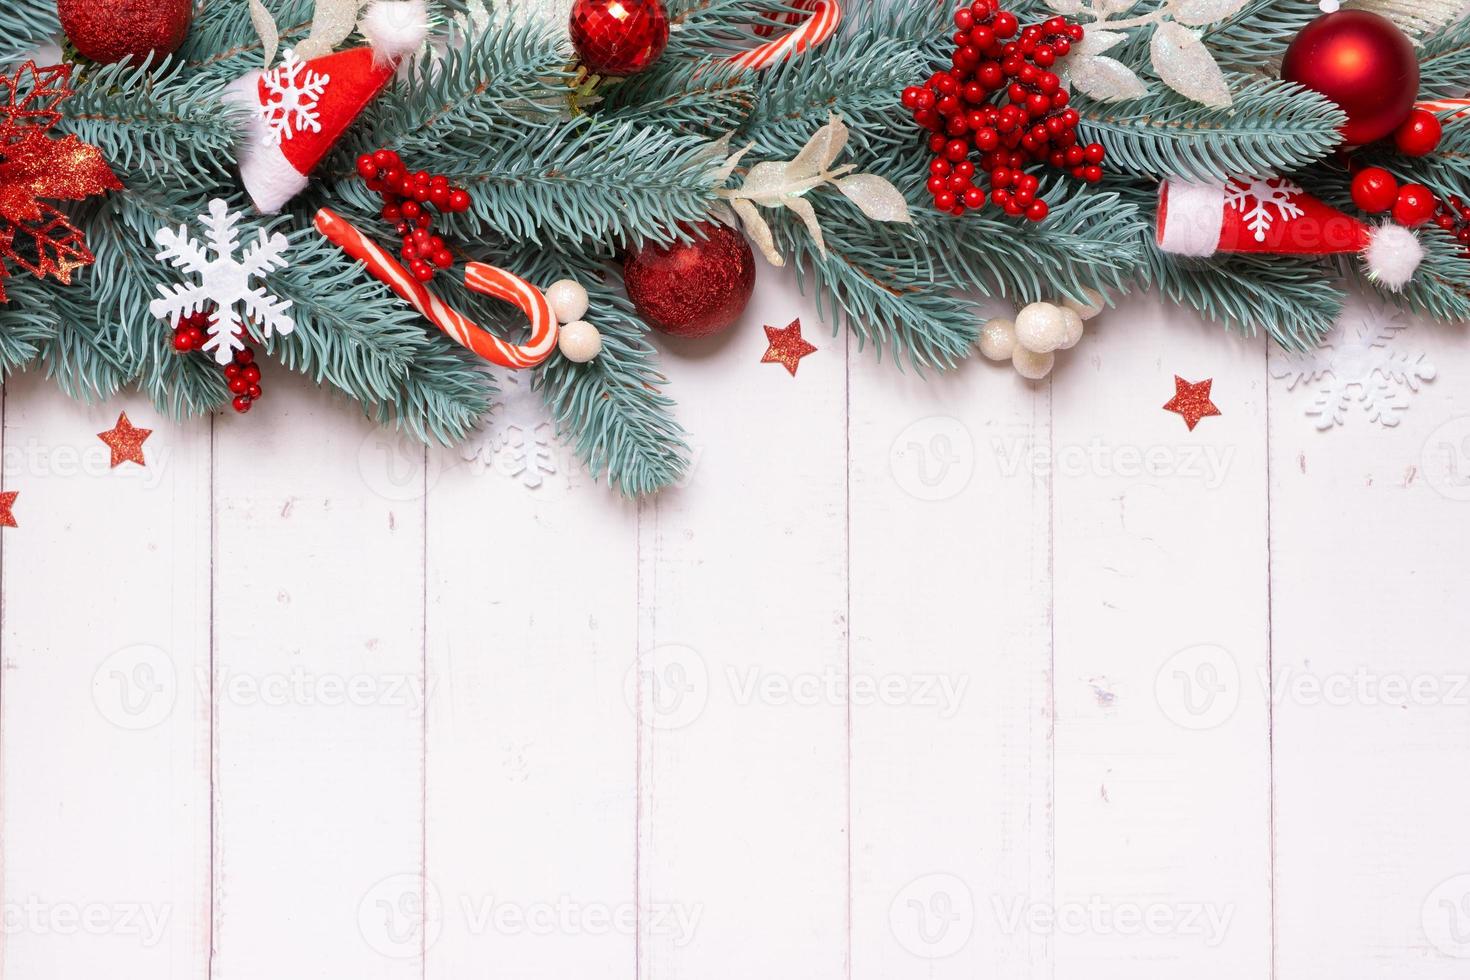 jul sammansättning tillverkad från tall träd, stjärnor och festlig dekorationer topp se. xmas platt lägga foto